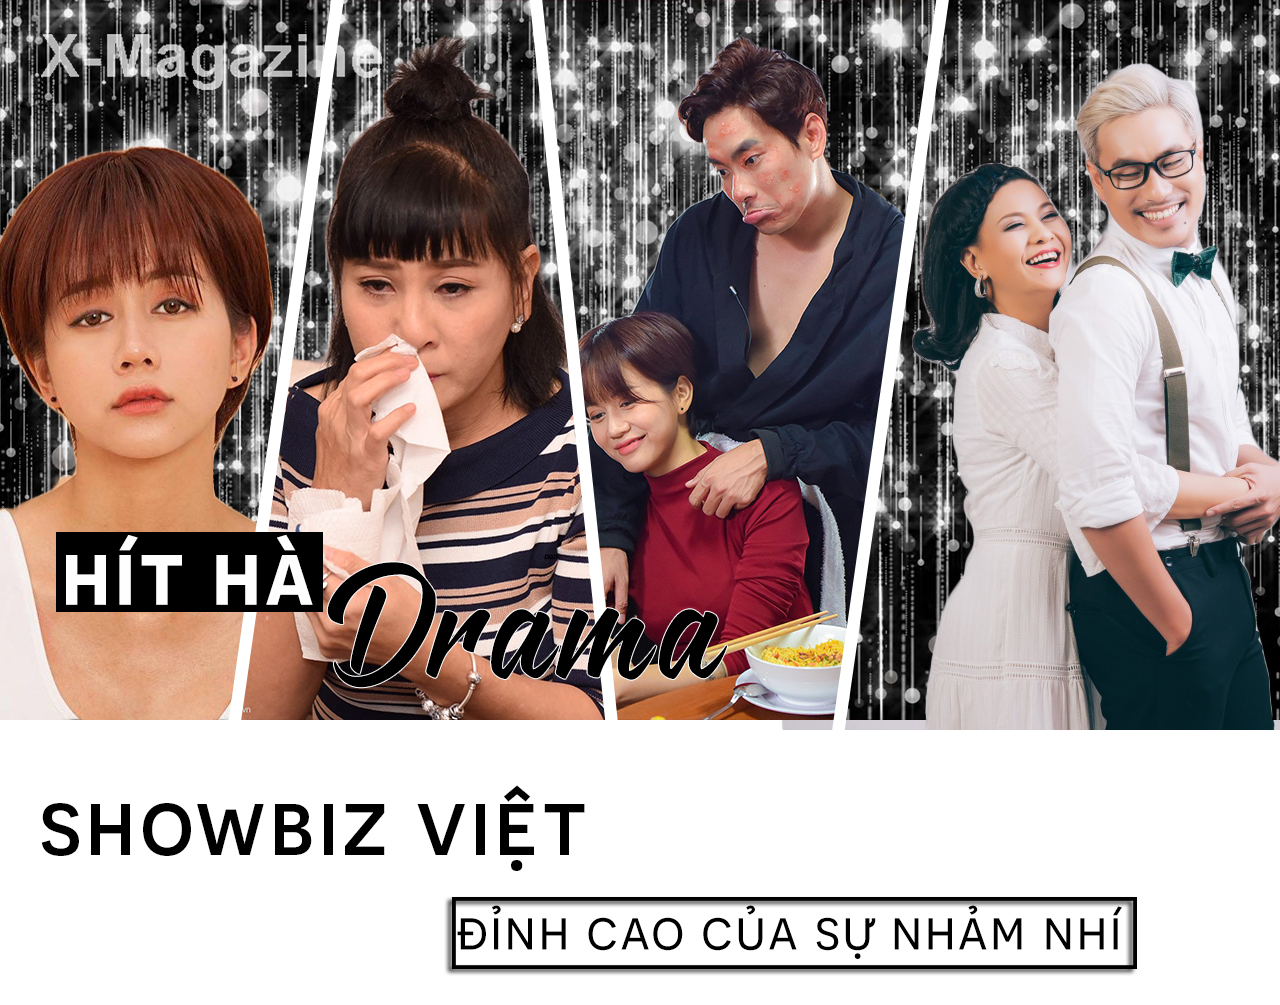 Showbiz Việt: Đỉnh cao nhảm nhí và drama "không hồi kết", xin hãy buông tha khán giả!